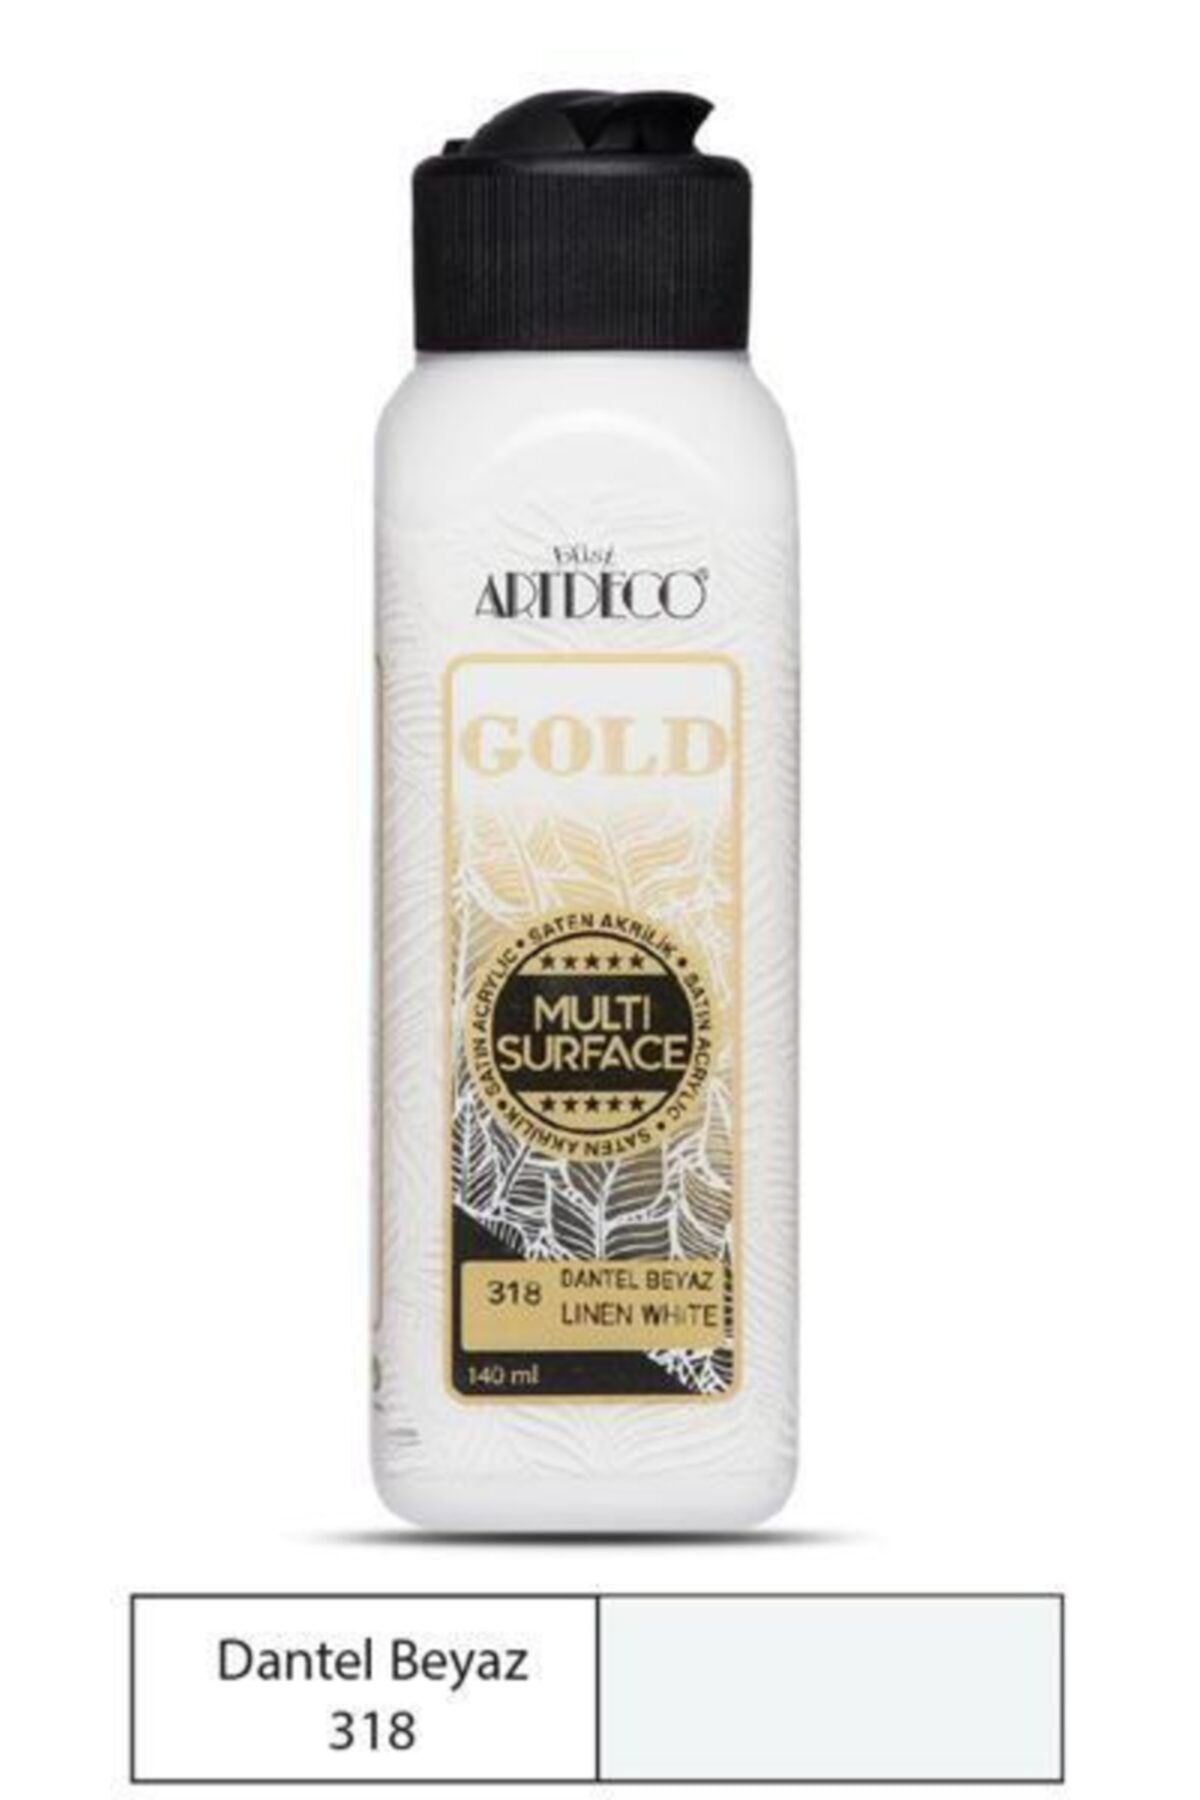 Artdeco Gold Multi Surface Akrilik Boya 140 ml. 318 Dantel Beyaz